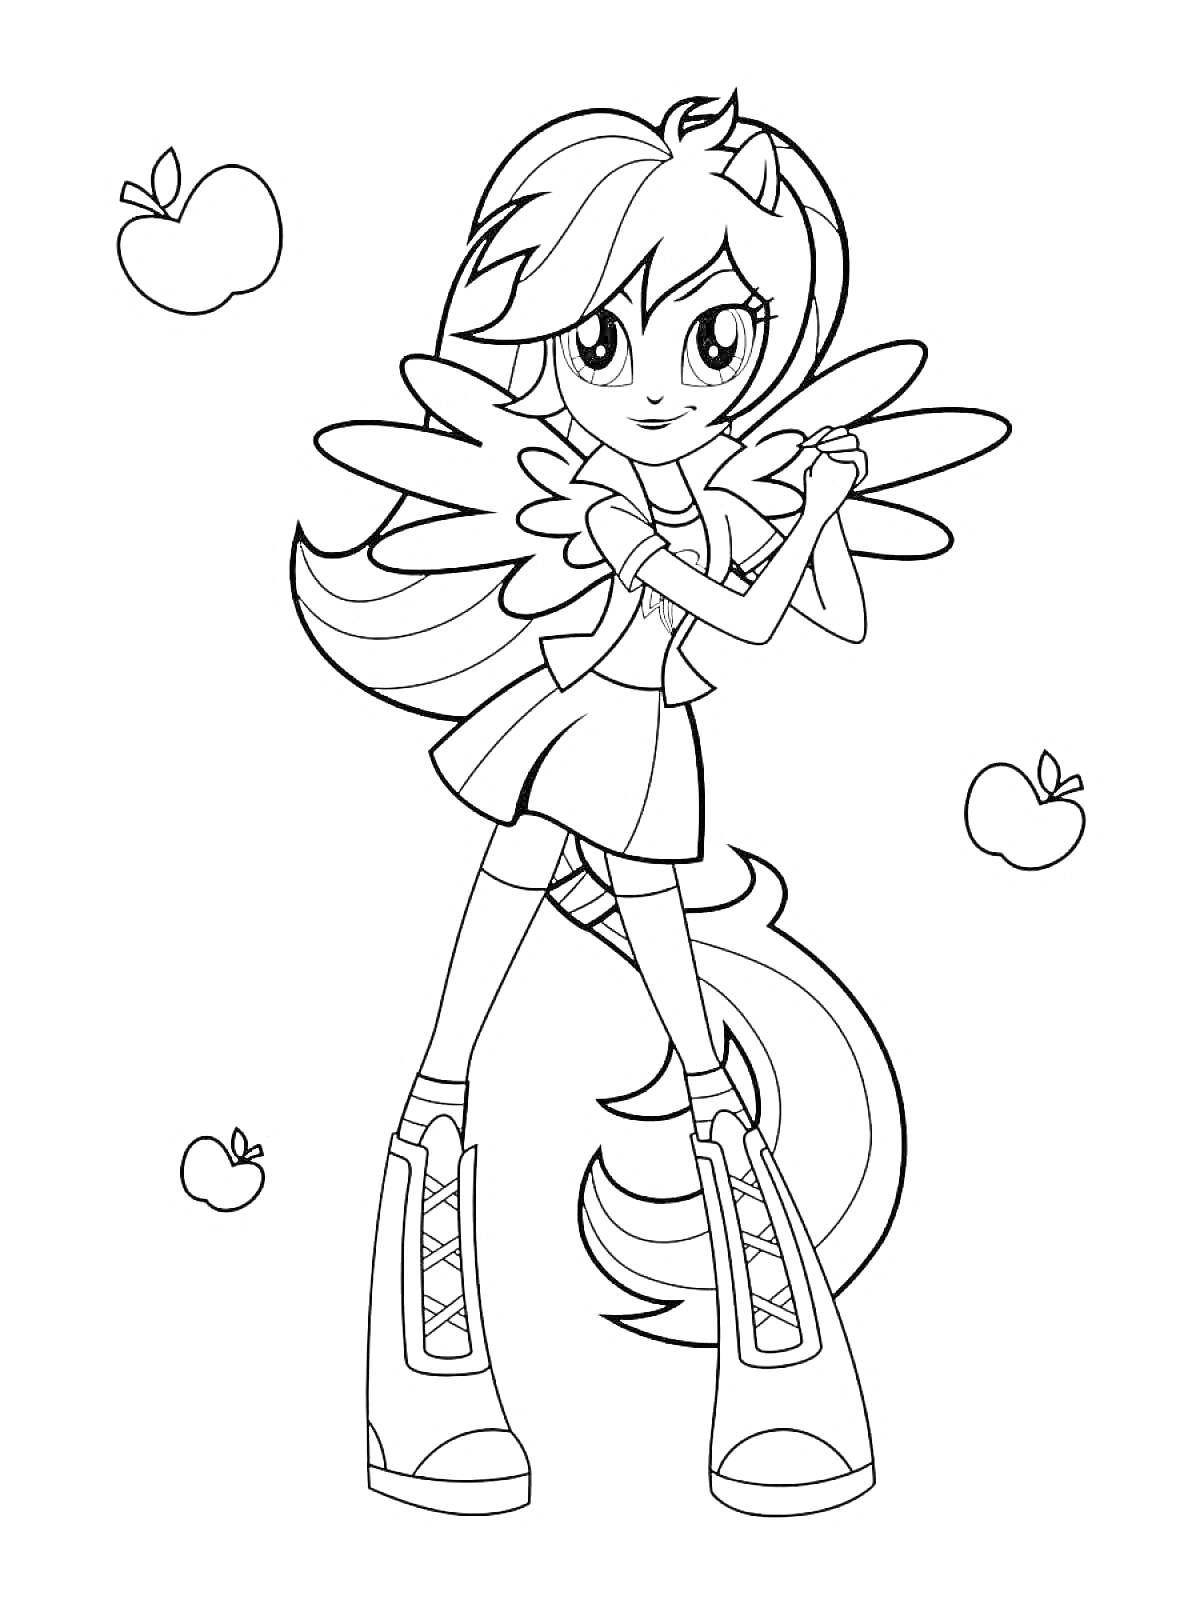 Раскраска Девушка с крыльями, стоящая со скрещенными руками и яблоками вокруг